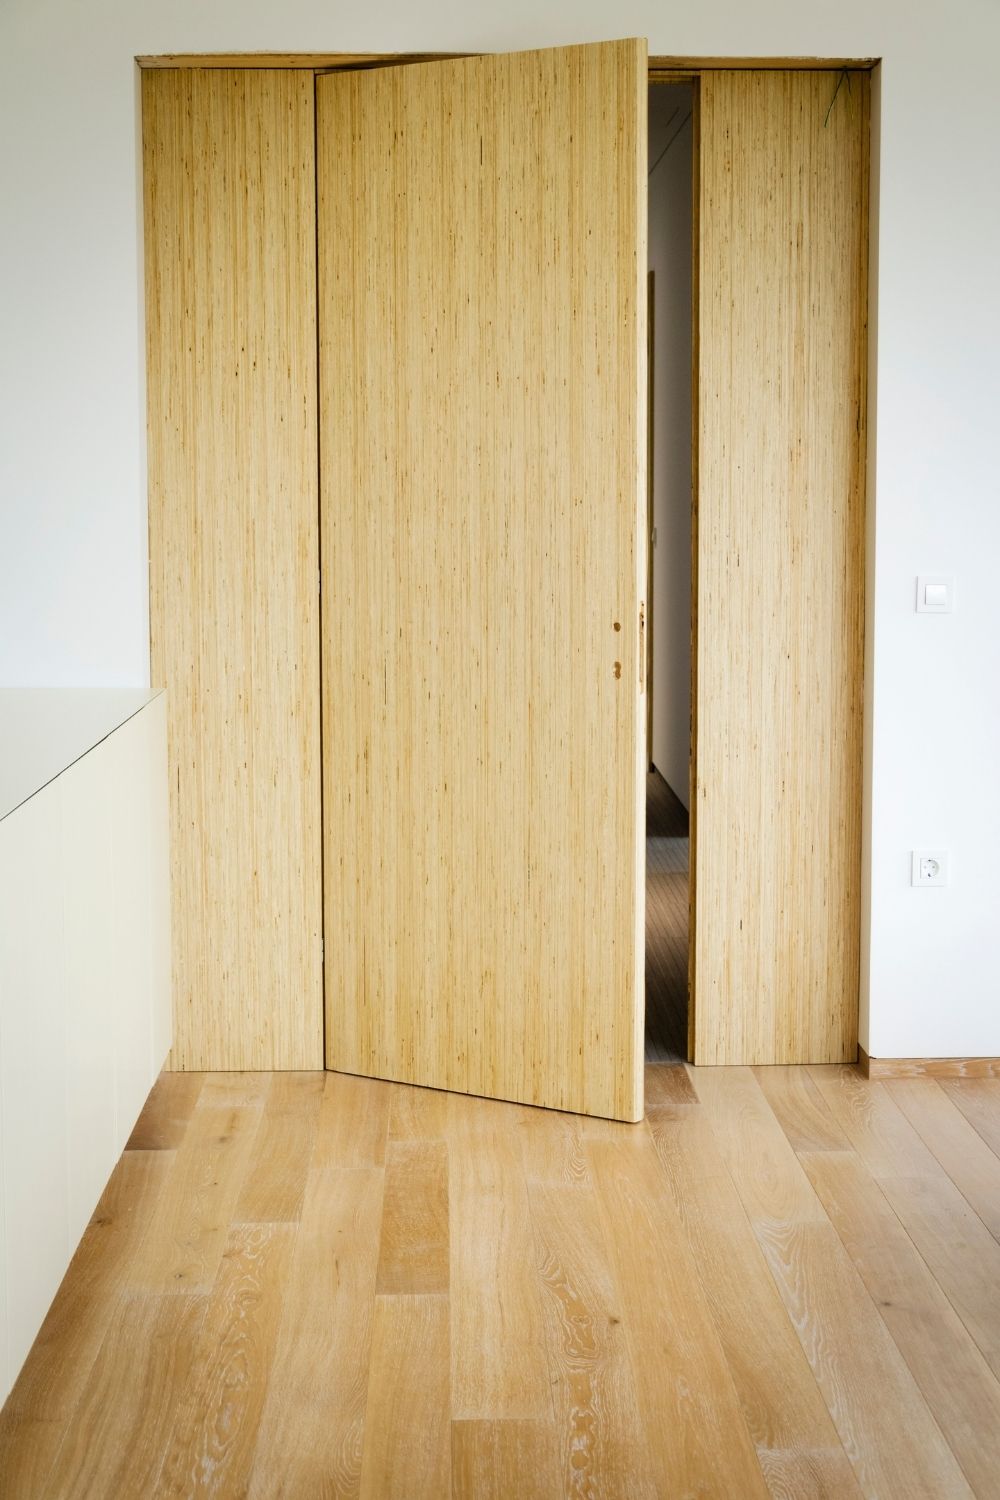 Natural wooden tone door